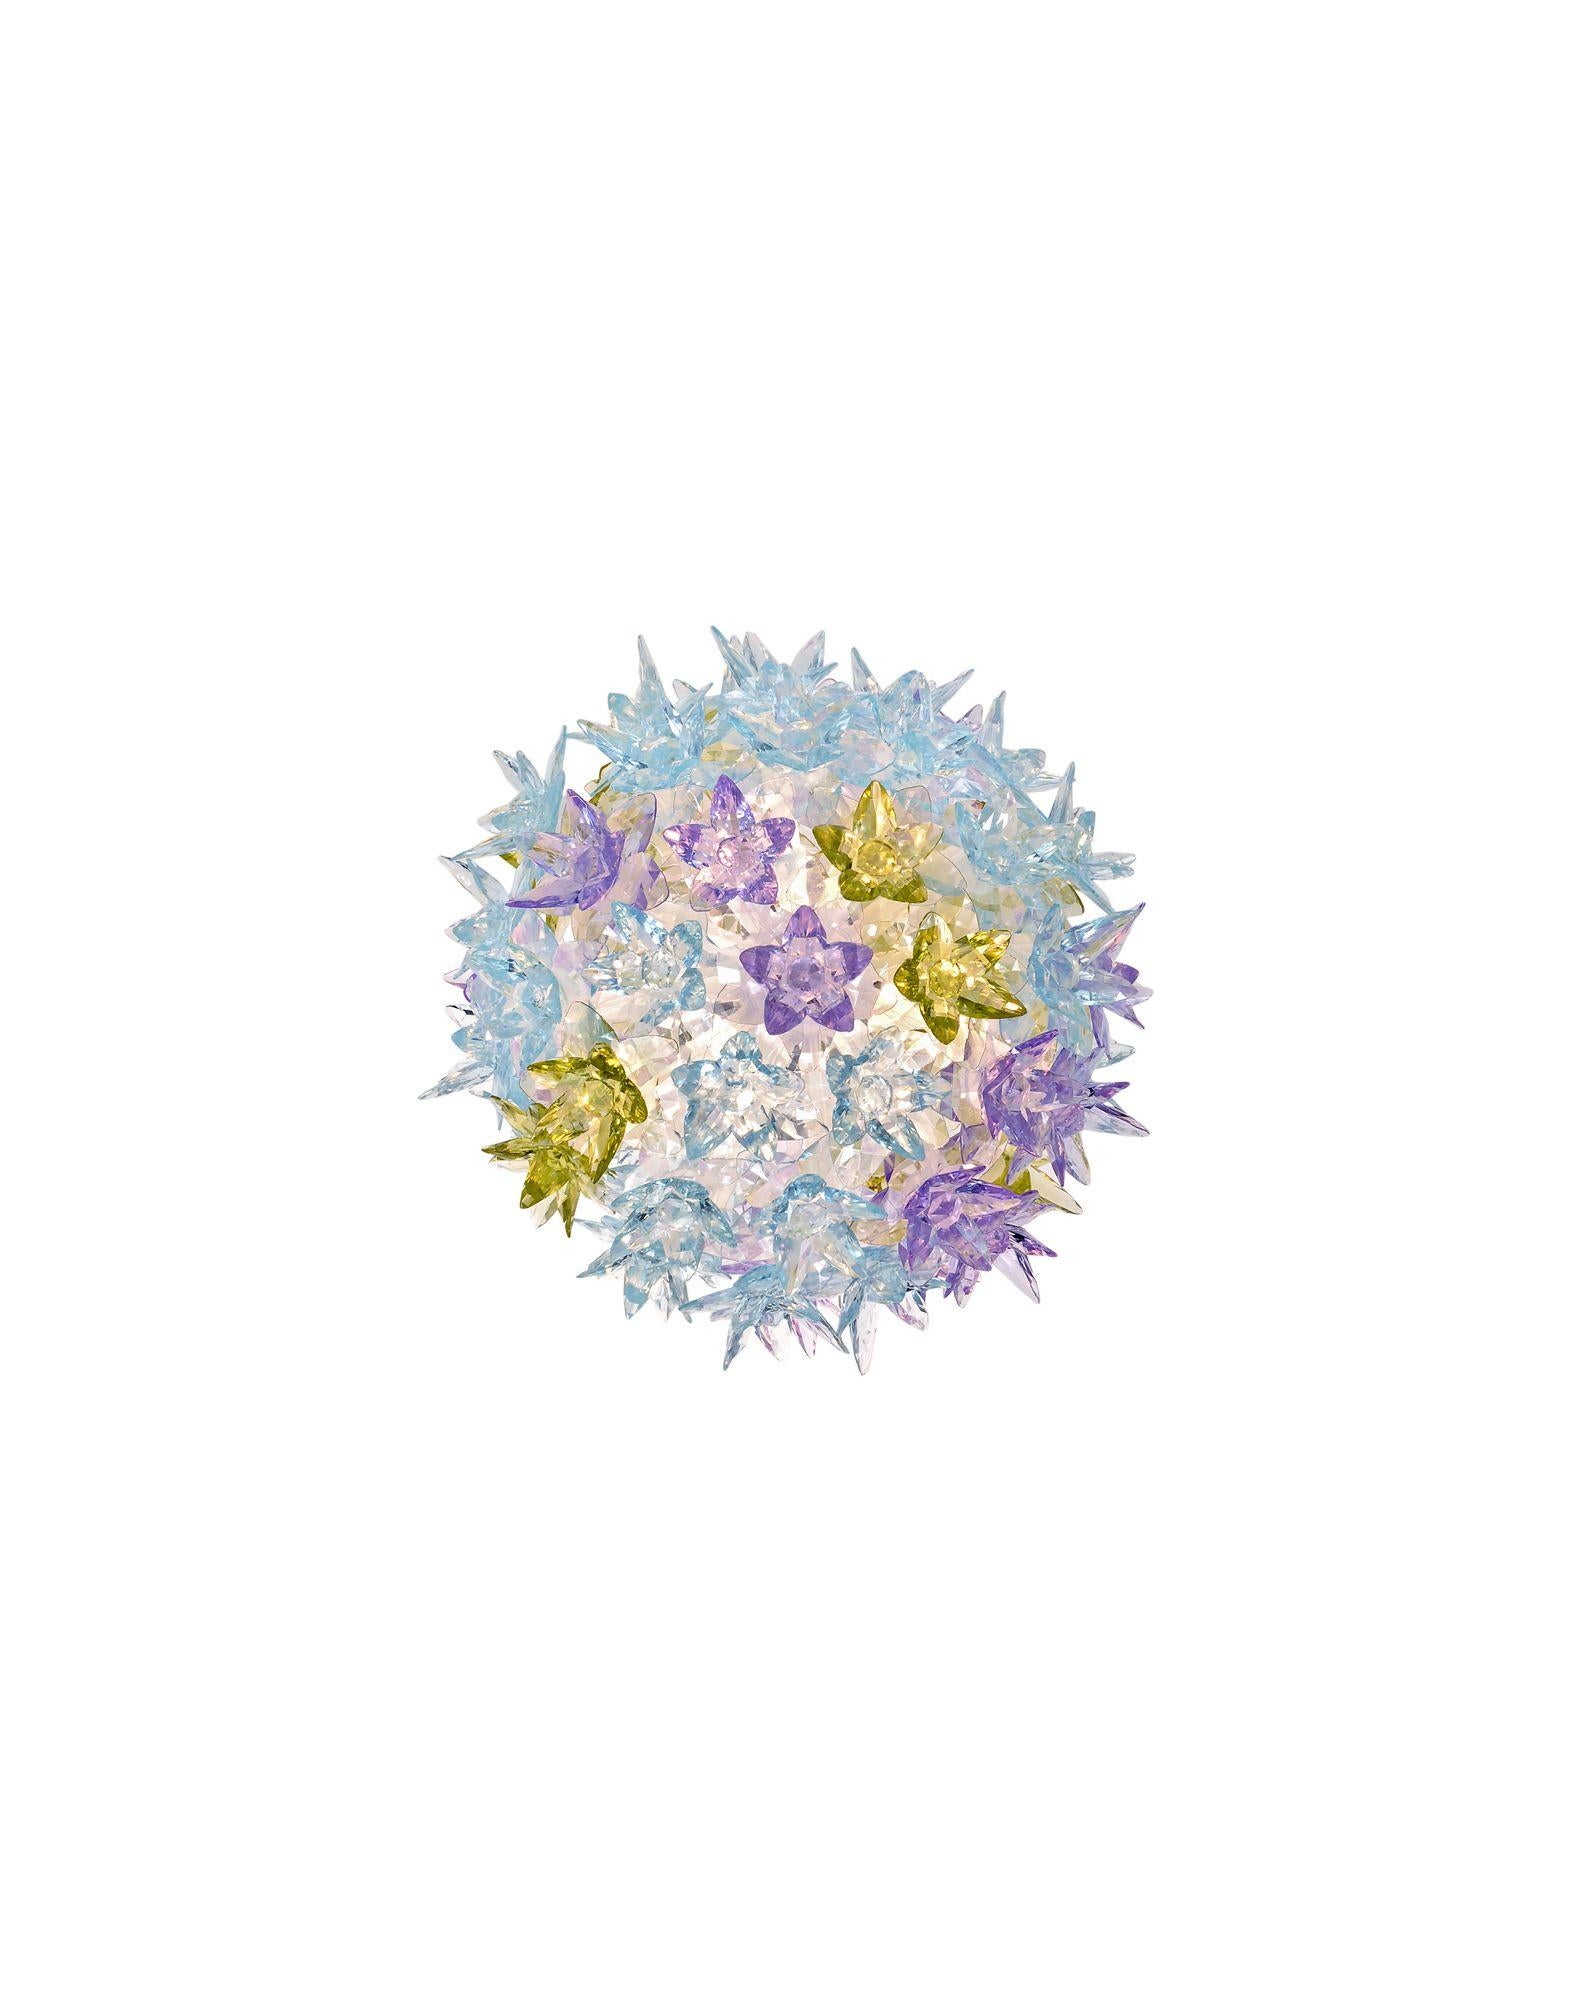 Bloom ist ein röhrenförmiges Polycarbonatgerüst, das vollständig von einer Struktur aus winzigen, transparenten Doppelkronenblüten aus Polycarbonat bedeckt ist. Das Ergebnis ist eine industriell gefertigte Leuchte mit den Formen und der